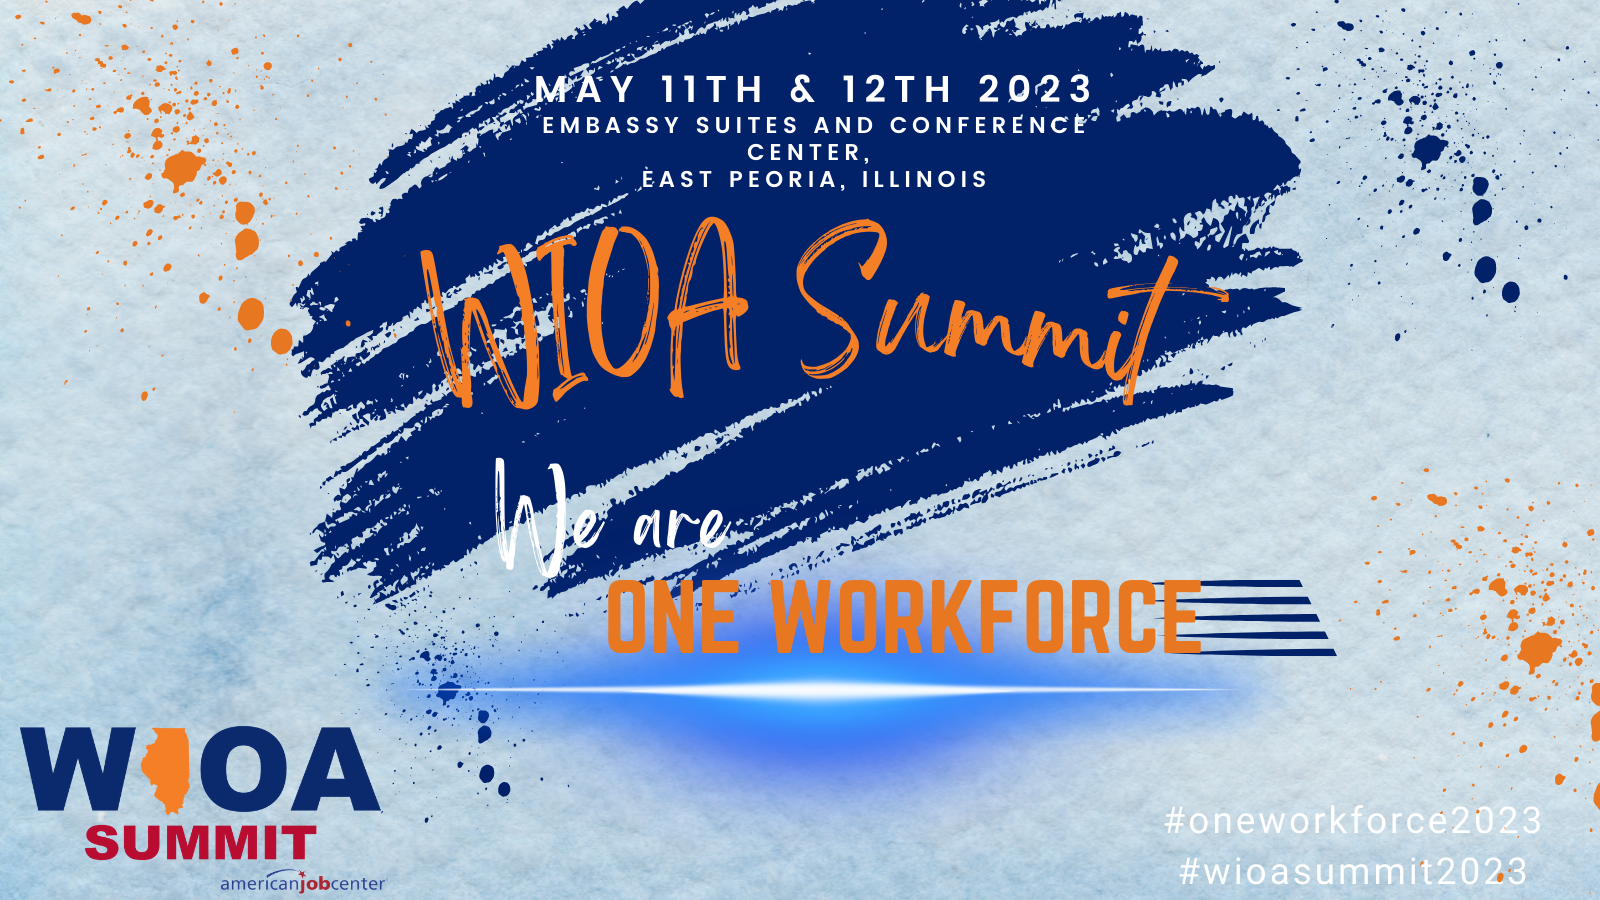 2023 WIOA Summit We Are One Workforce